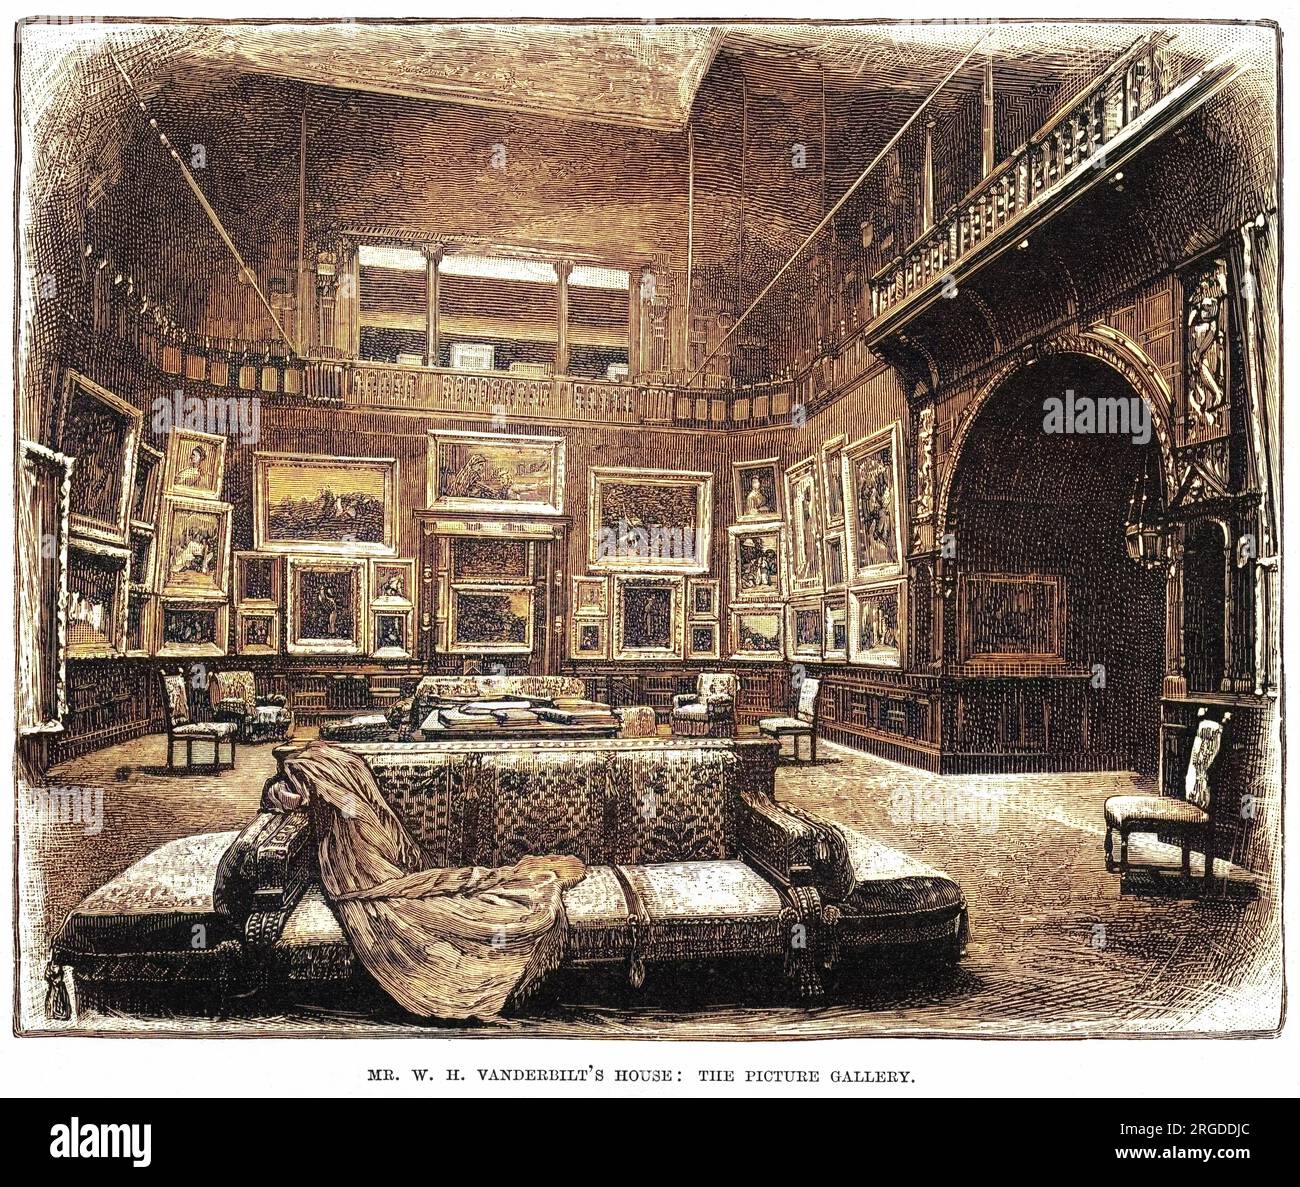 La pinacoteca nella casa di New York di William Henry Vanderbilt, magnate delle ferrovie. Nessuna delle immagini raffigura un treno ferroviario, sorprendentemente. Foto Stock